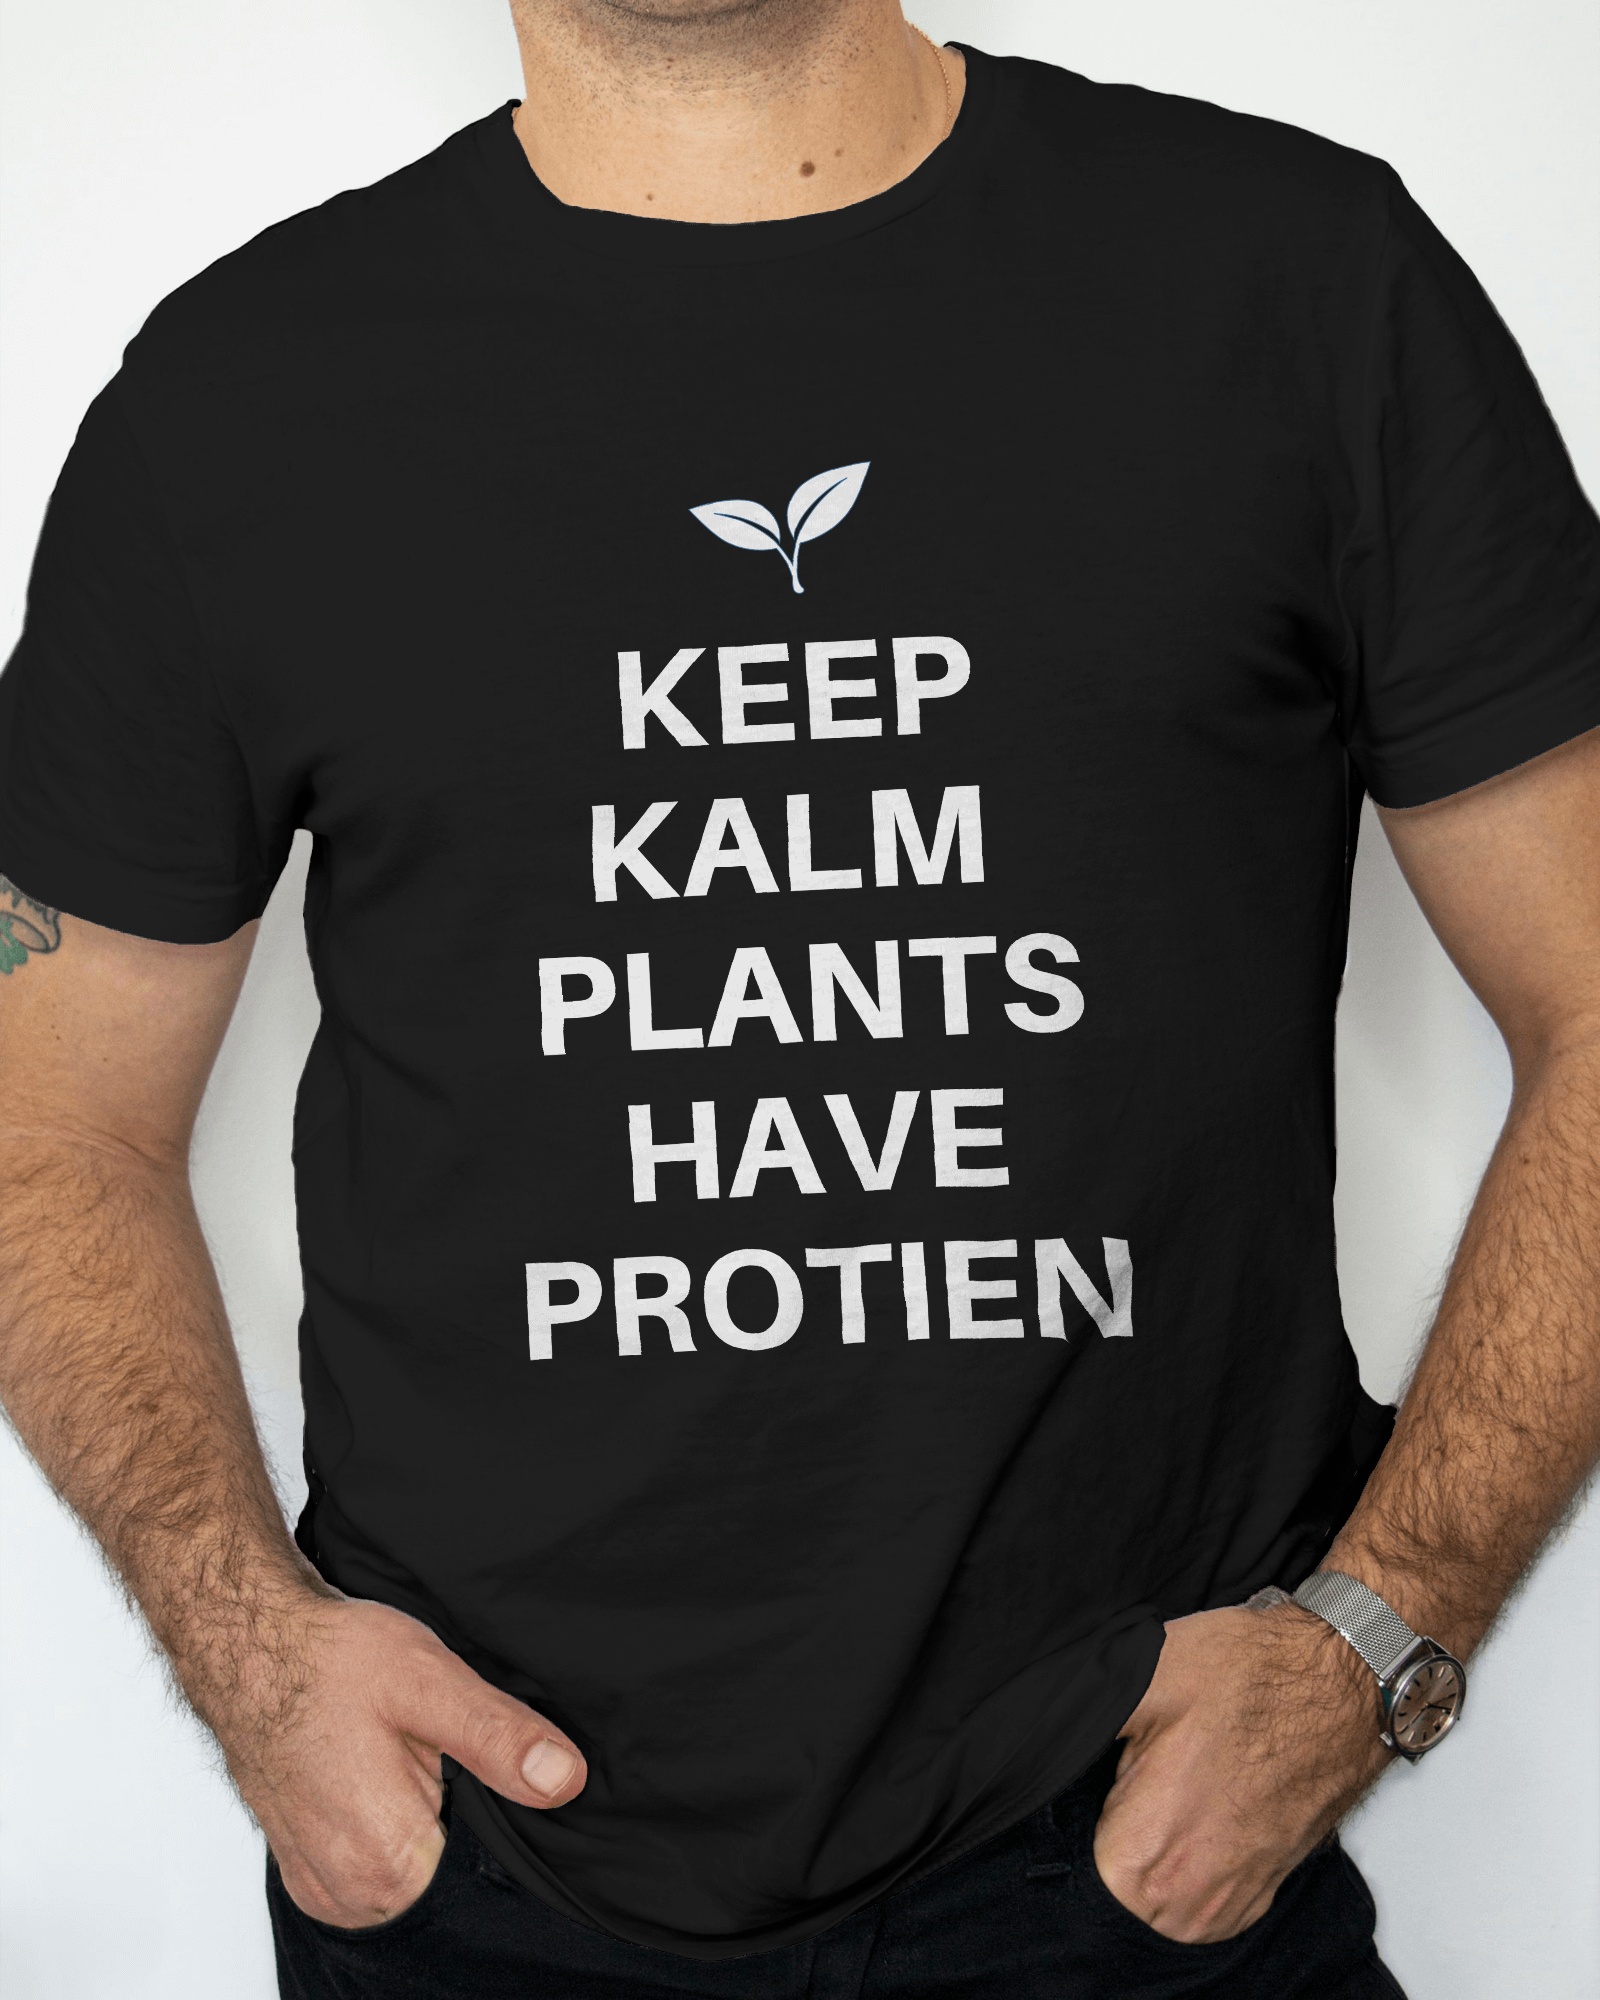 vegan shirt for men